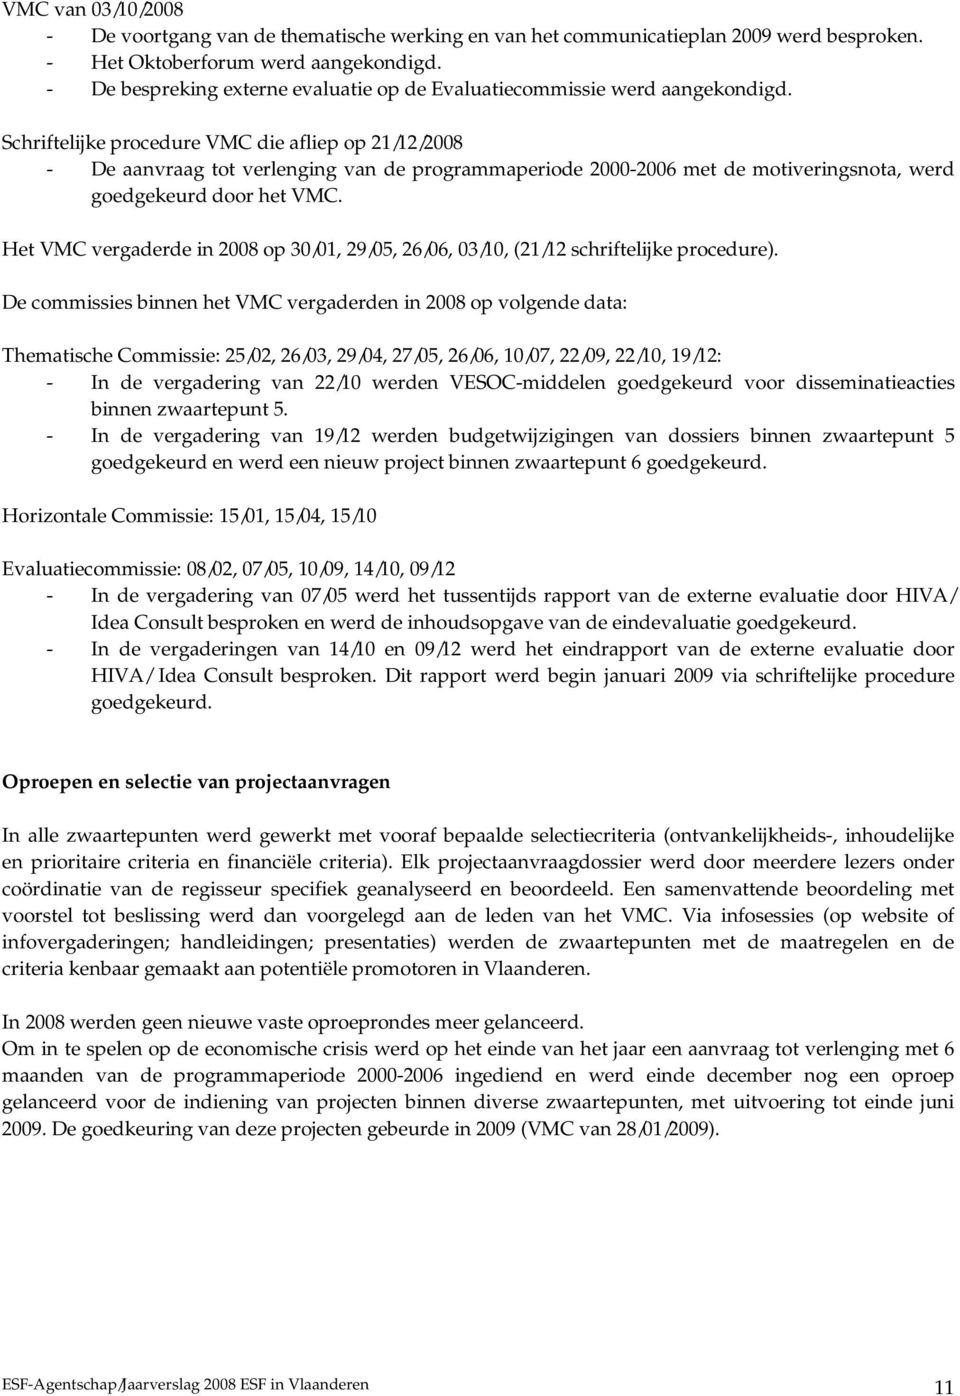 Schriftelijke procedure VMC die afliep op 21/12/2008 - De aanvraag tot verlenging van de programmaperiode 2000-2006 met de motiveringsnota, werd goedgekeurd door het VMC.